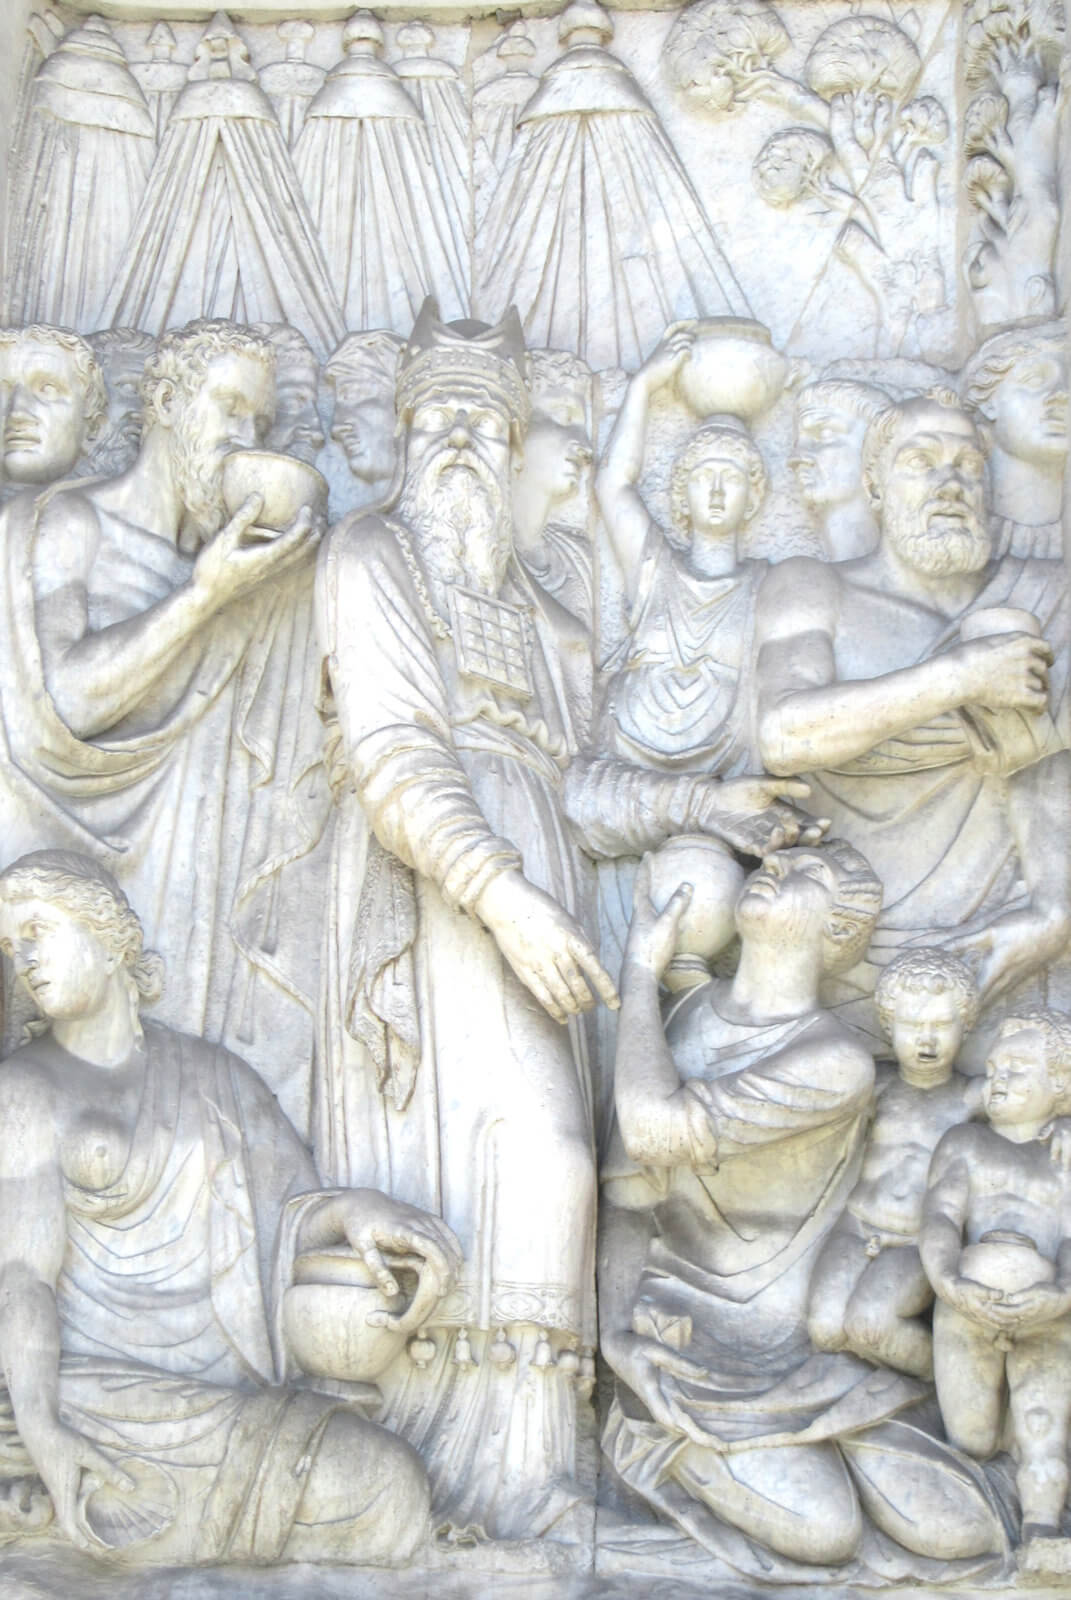 Giacomo delle Porta: Aaron führt die dürstenden Israeliten zur Quelle, 1587, Relief an der Fontana dell'Arco Felice in Rom